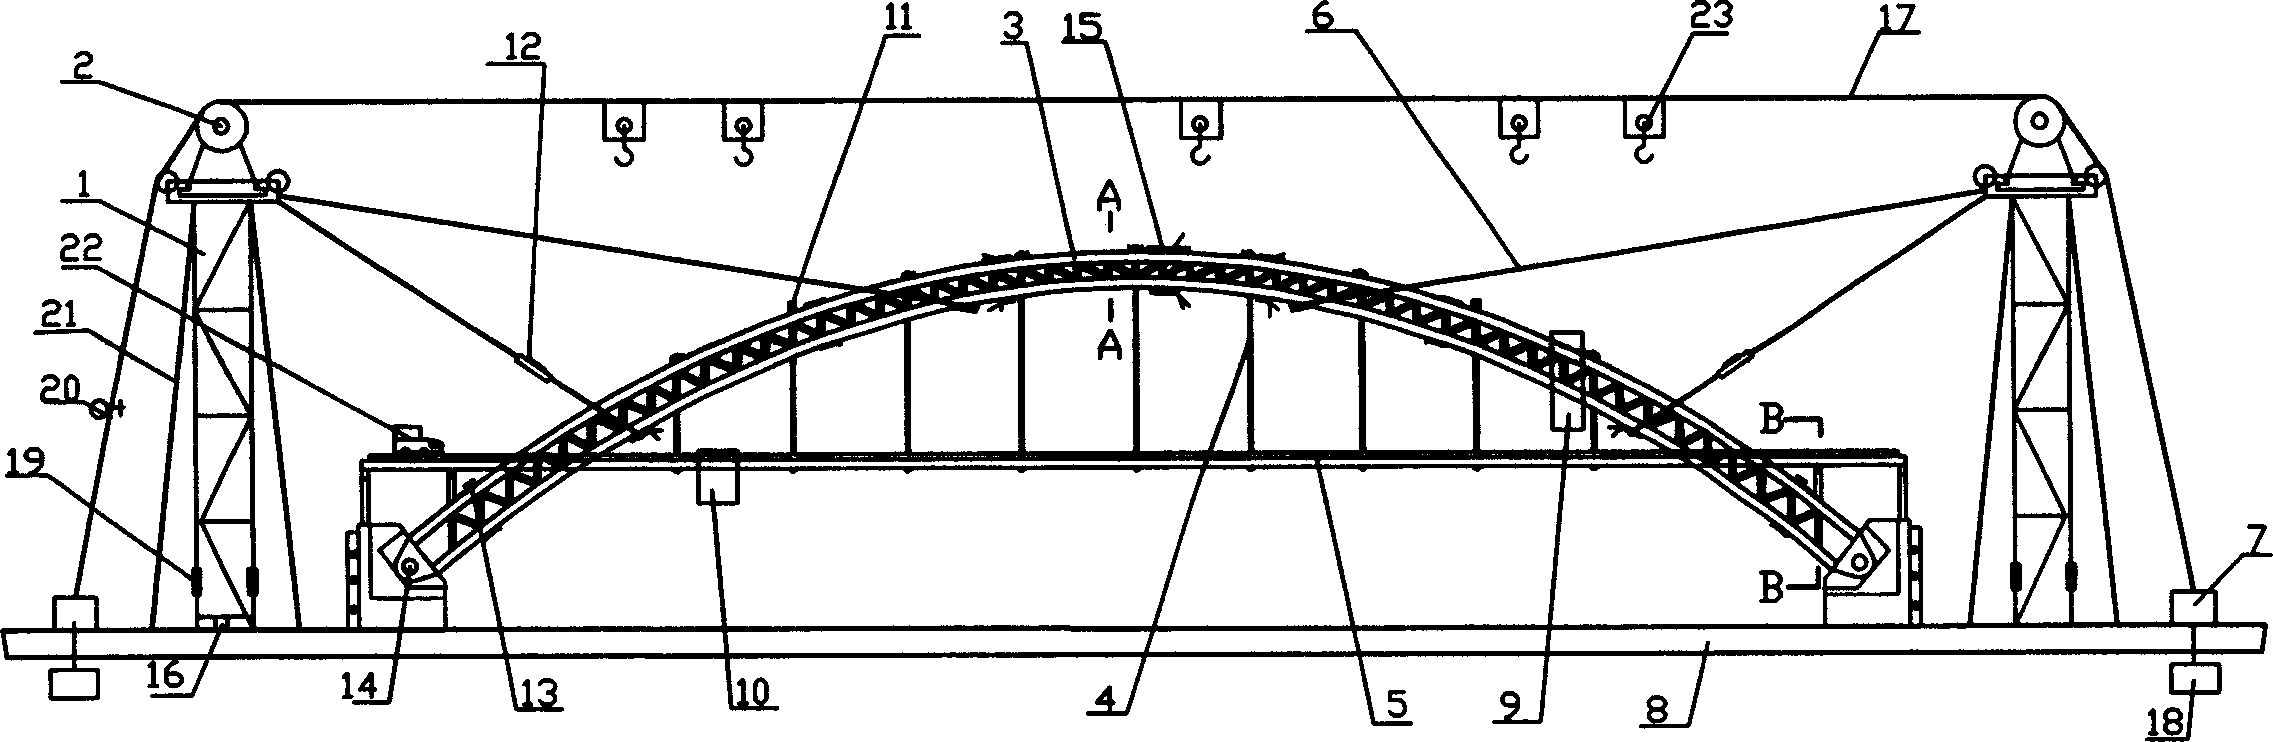 Arch bridge expiremental stage